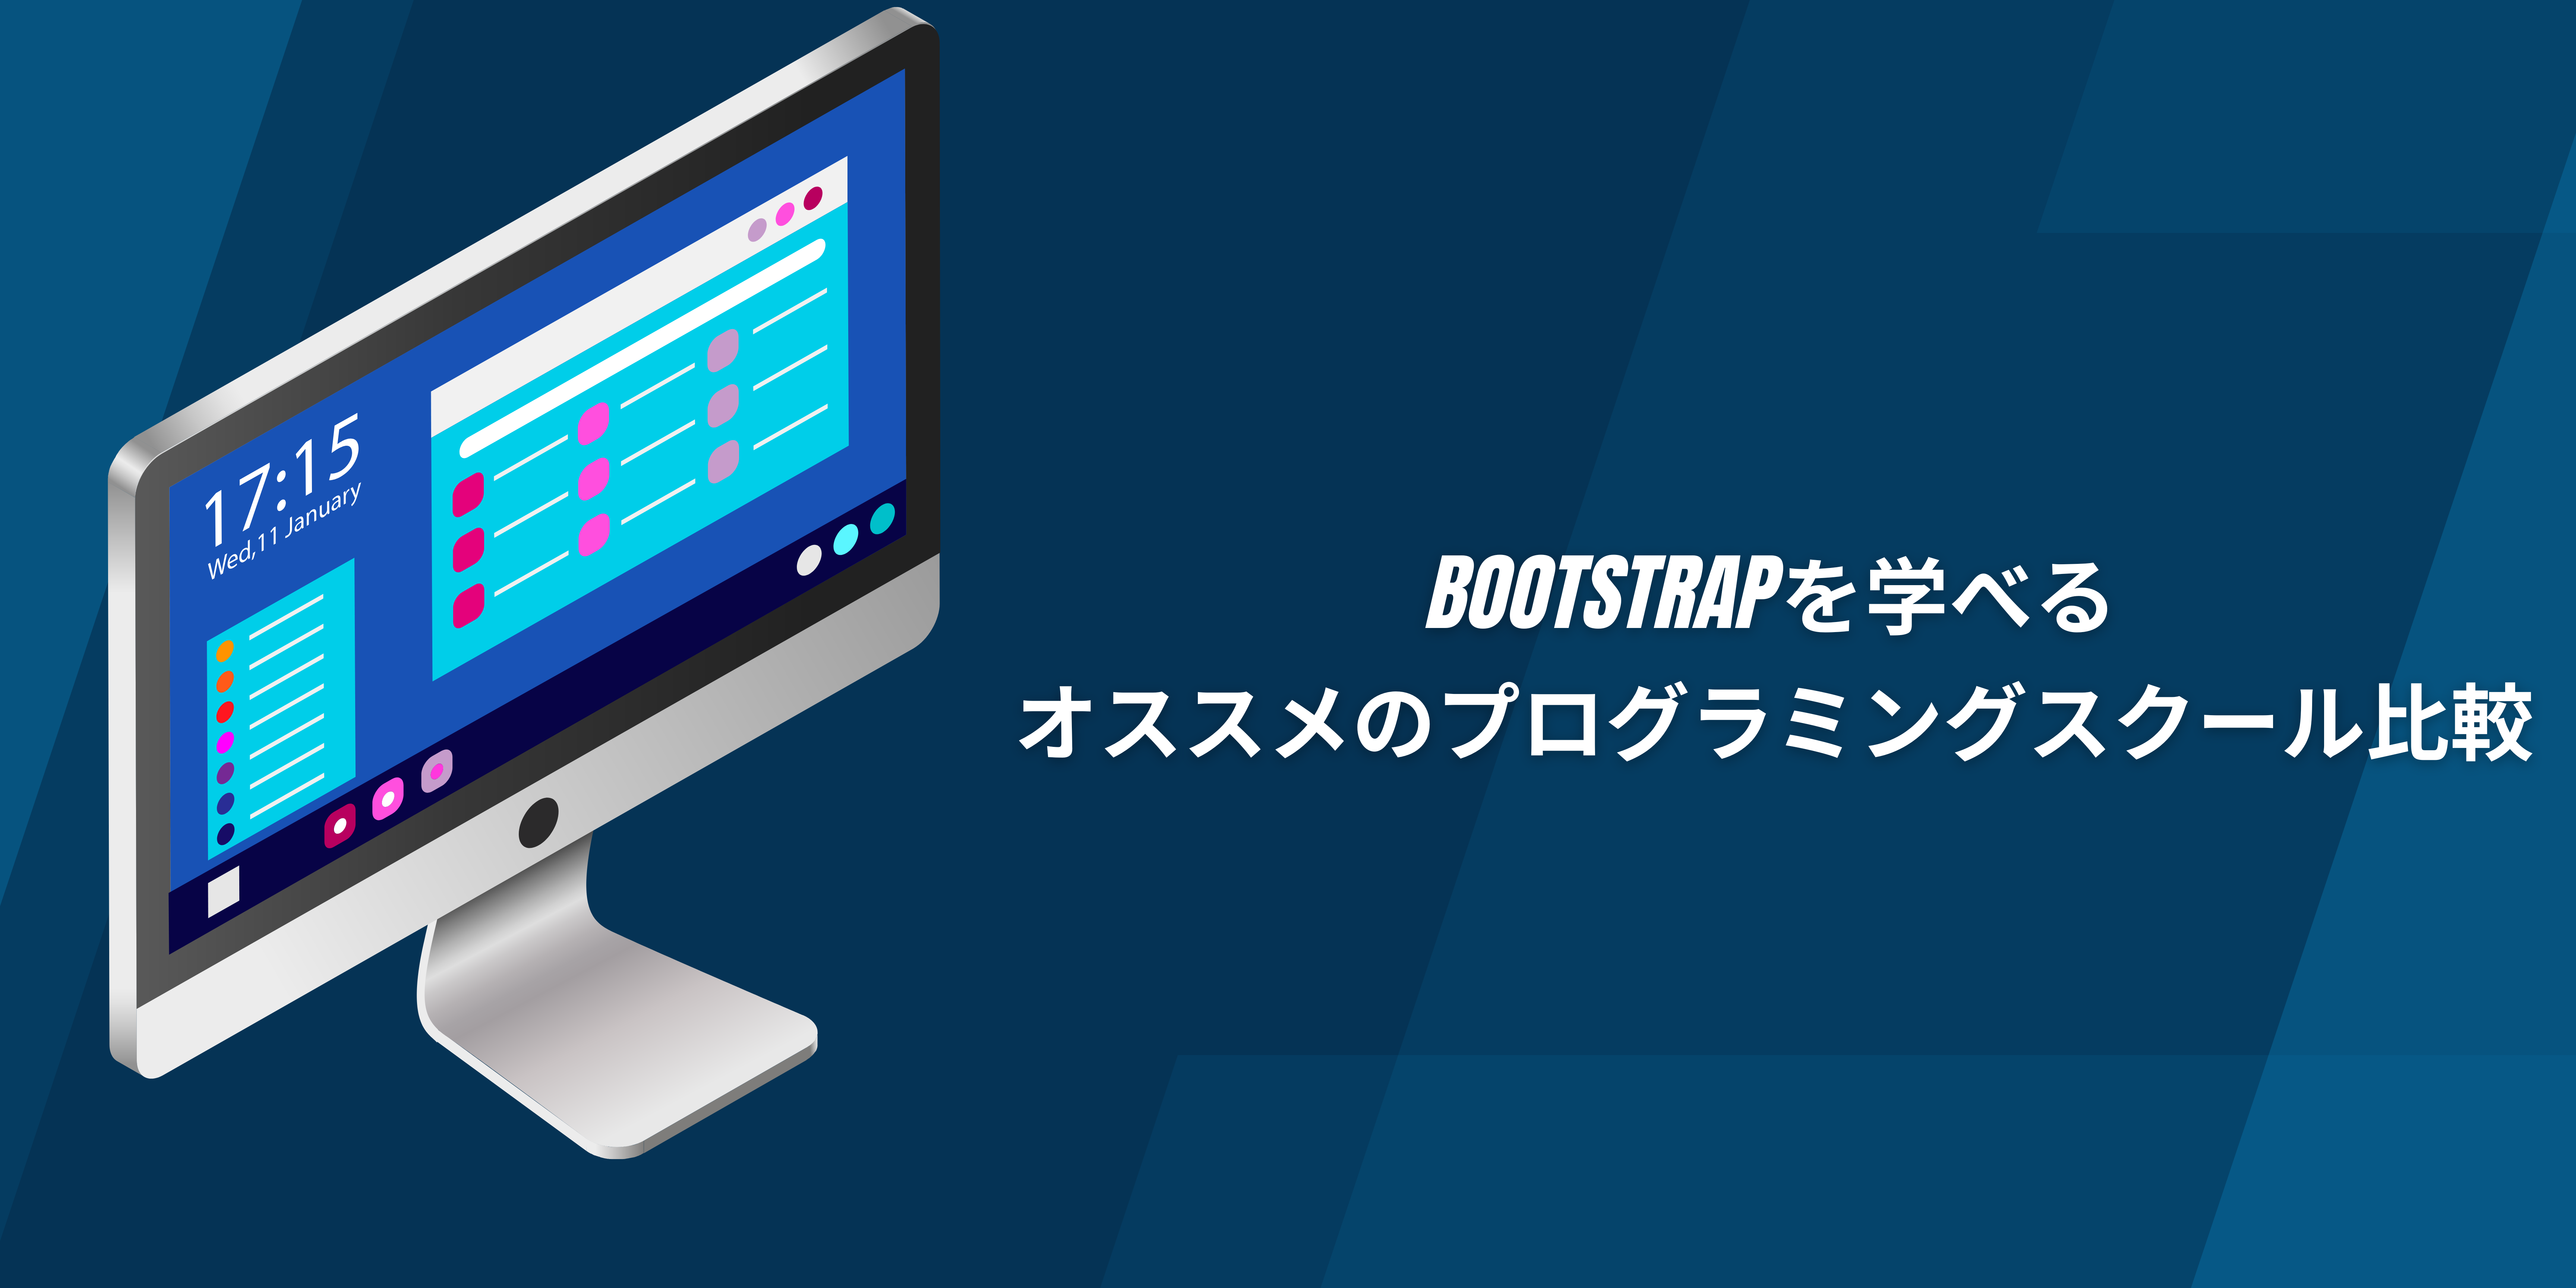 Bootstrapを学べるオススメのプログラミングスクール比較!